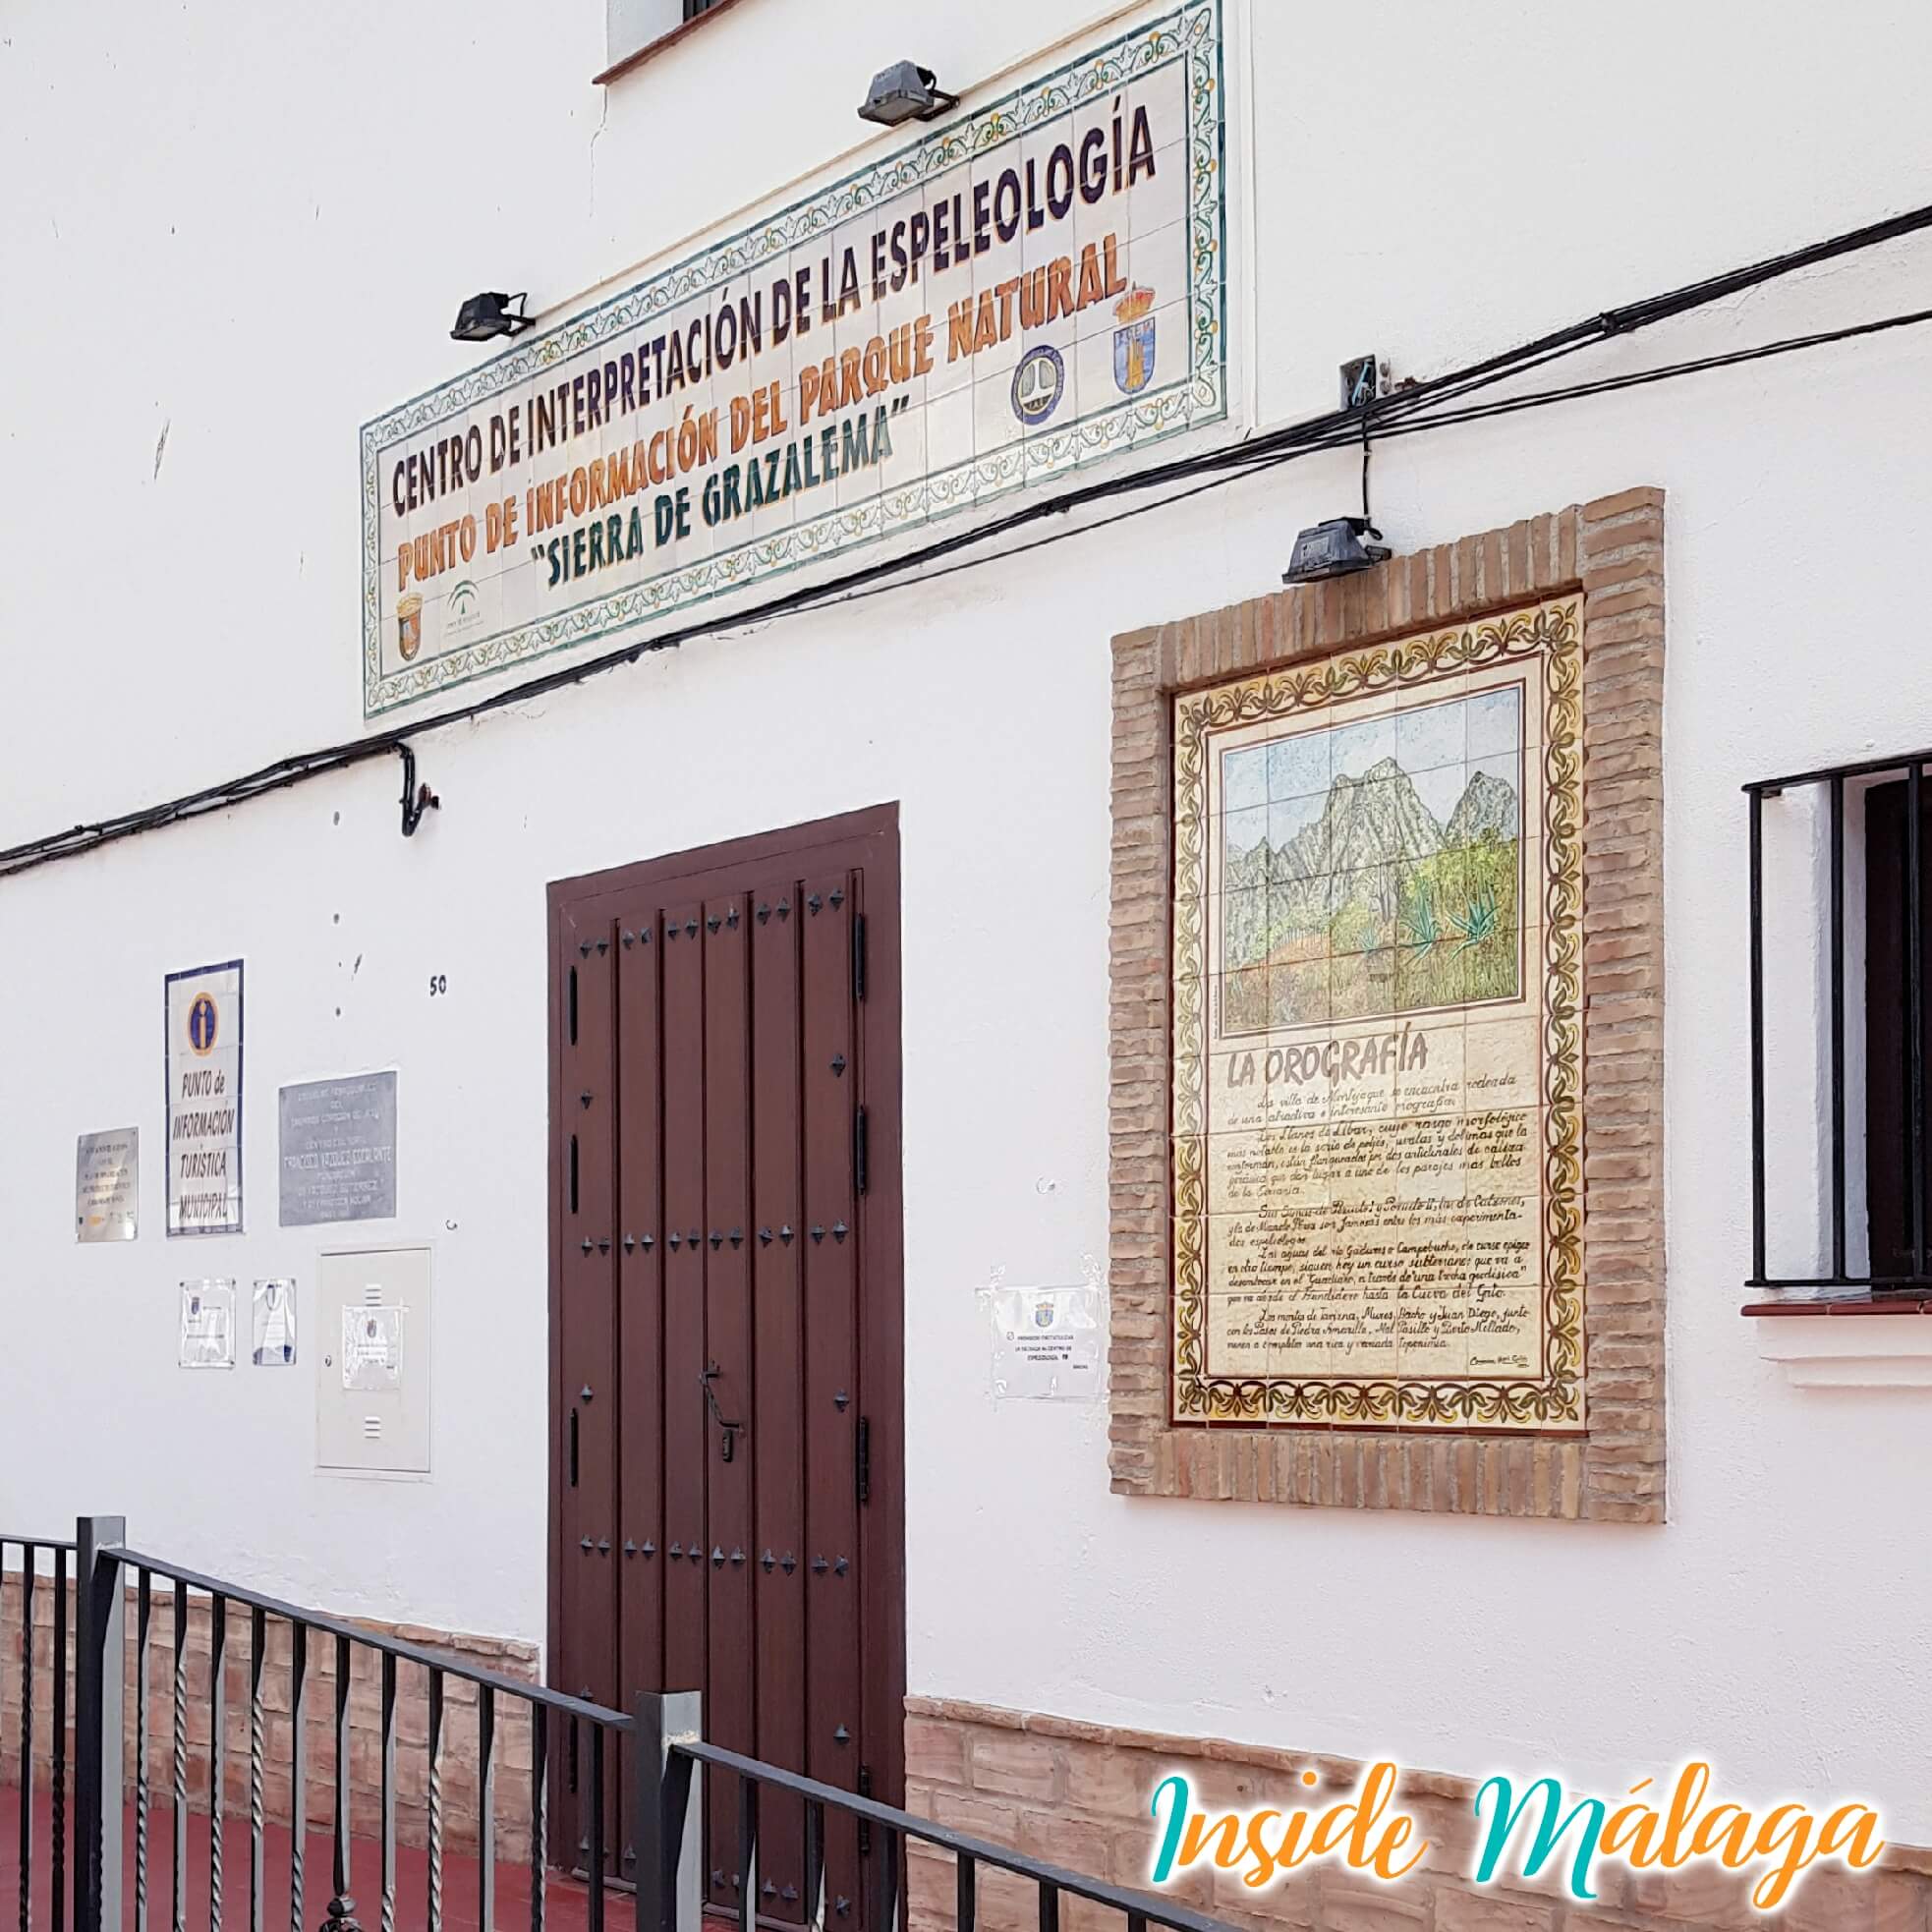 Centro de Interpretación de la Espeleologia Montejaque Malaga